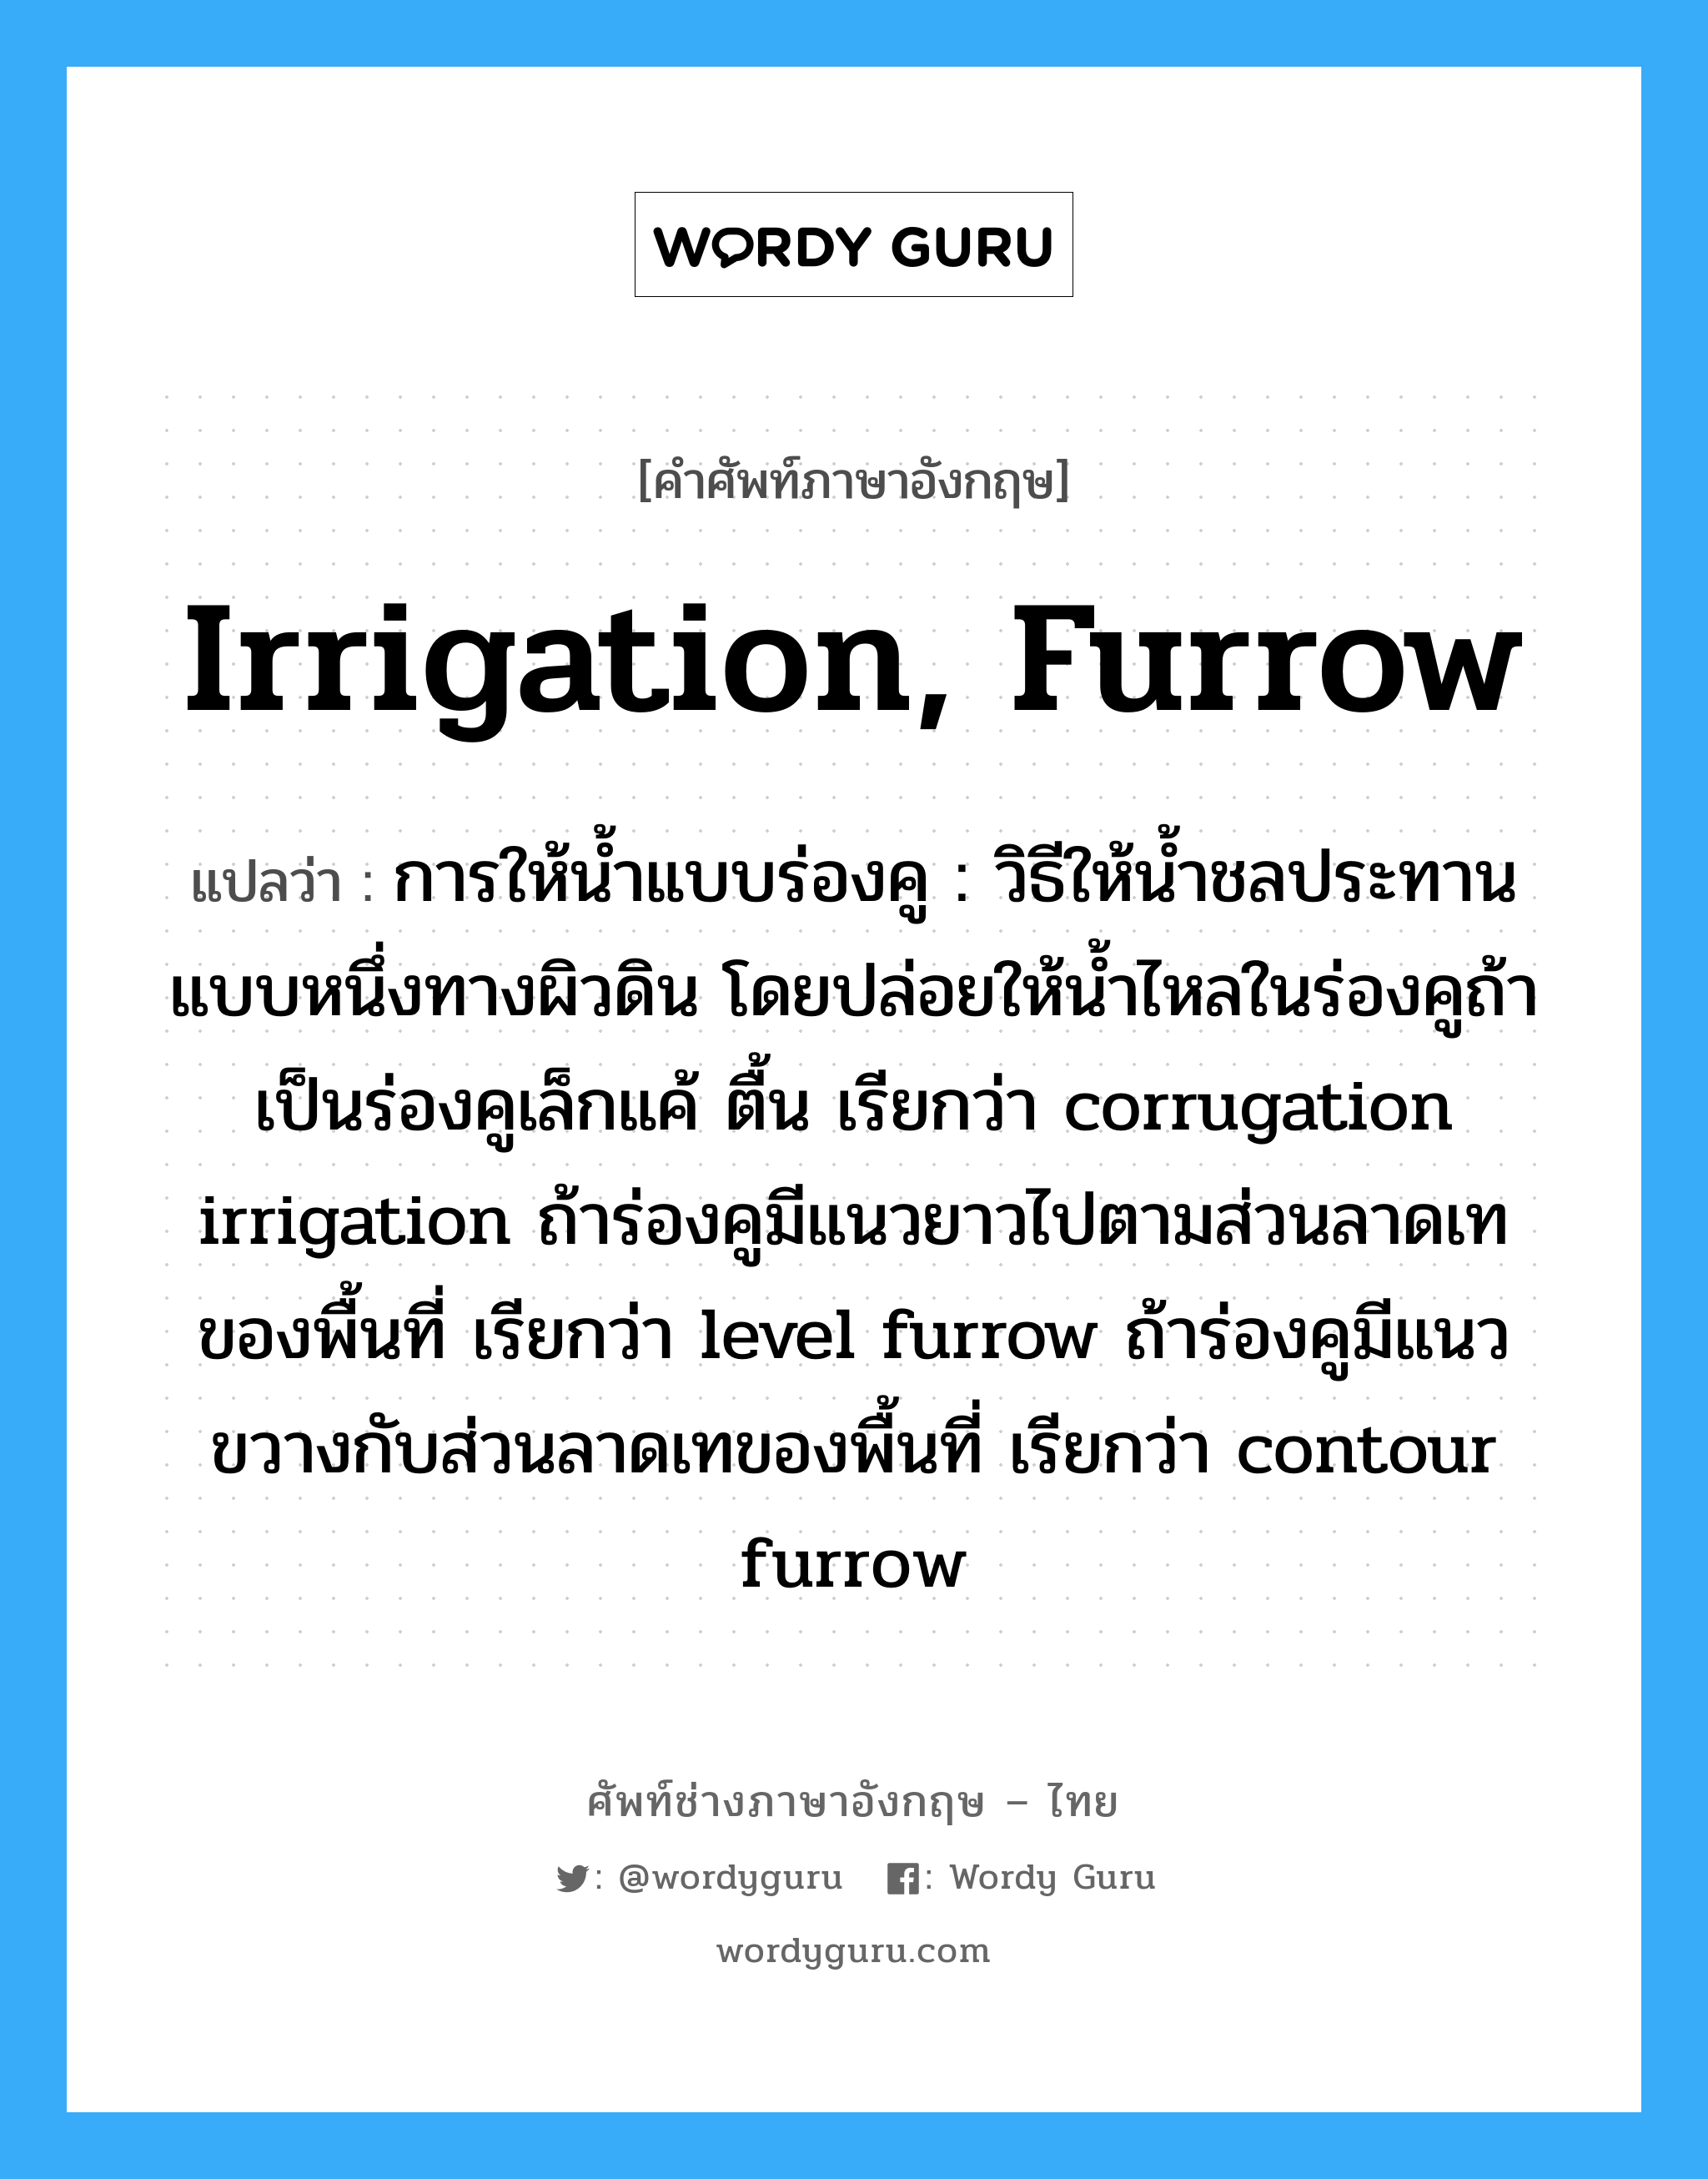 irrigation, furrow แปลว่า?, คำศัพท์ช่างภาษาอังกฤษ - ไทย irrigation, furrow คำศัพท์ภาษาอังกฤษ irrigation, furrow แปลว่า การให้น้ำแบบร่องคู : วิธีให้น้ำชลประทานแบบหนึ่งทางผิวดิน โดยปล่อยให้น้ำไหลในร่องคูถ้าเป็นร่องคูเล็กแค้ ตื้น เรียกว่า corrugation irrigation ถ้าร่องคูมีแนวยาวไปตามส่วนลาดเทของพื้นที่ เรียกว่า level furrow ถ้าร่องคูมีแนวขวางกับส่วนลาดเทของพื้นที่ เรียกว่า contour furrow